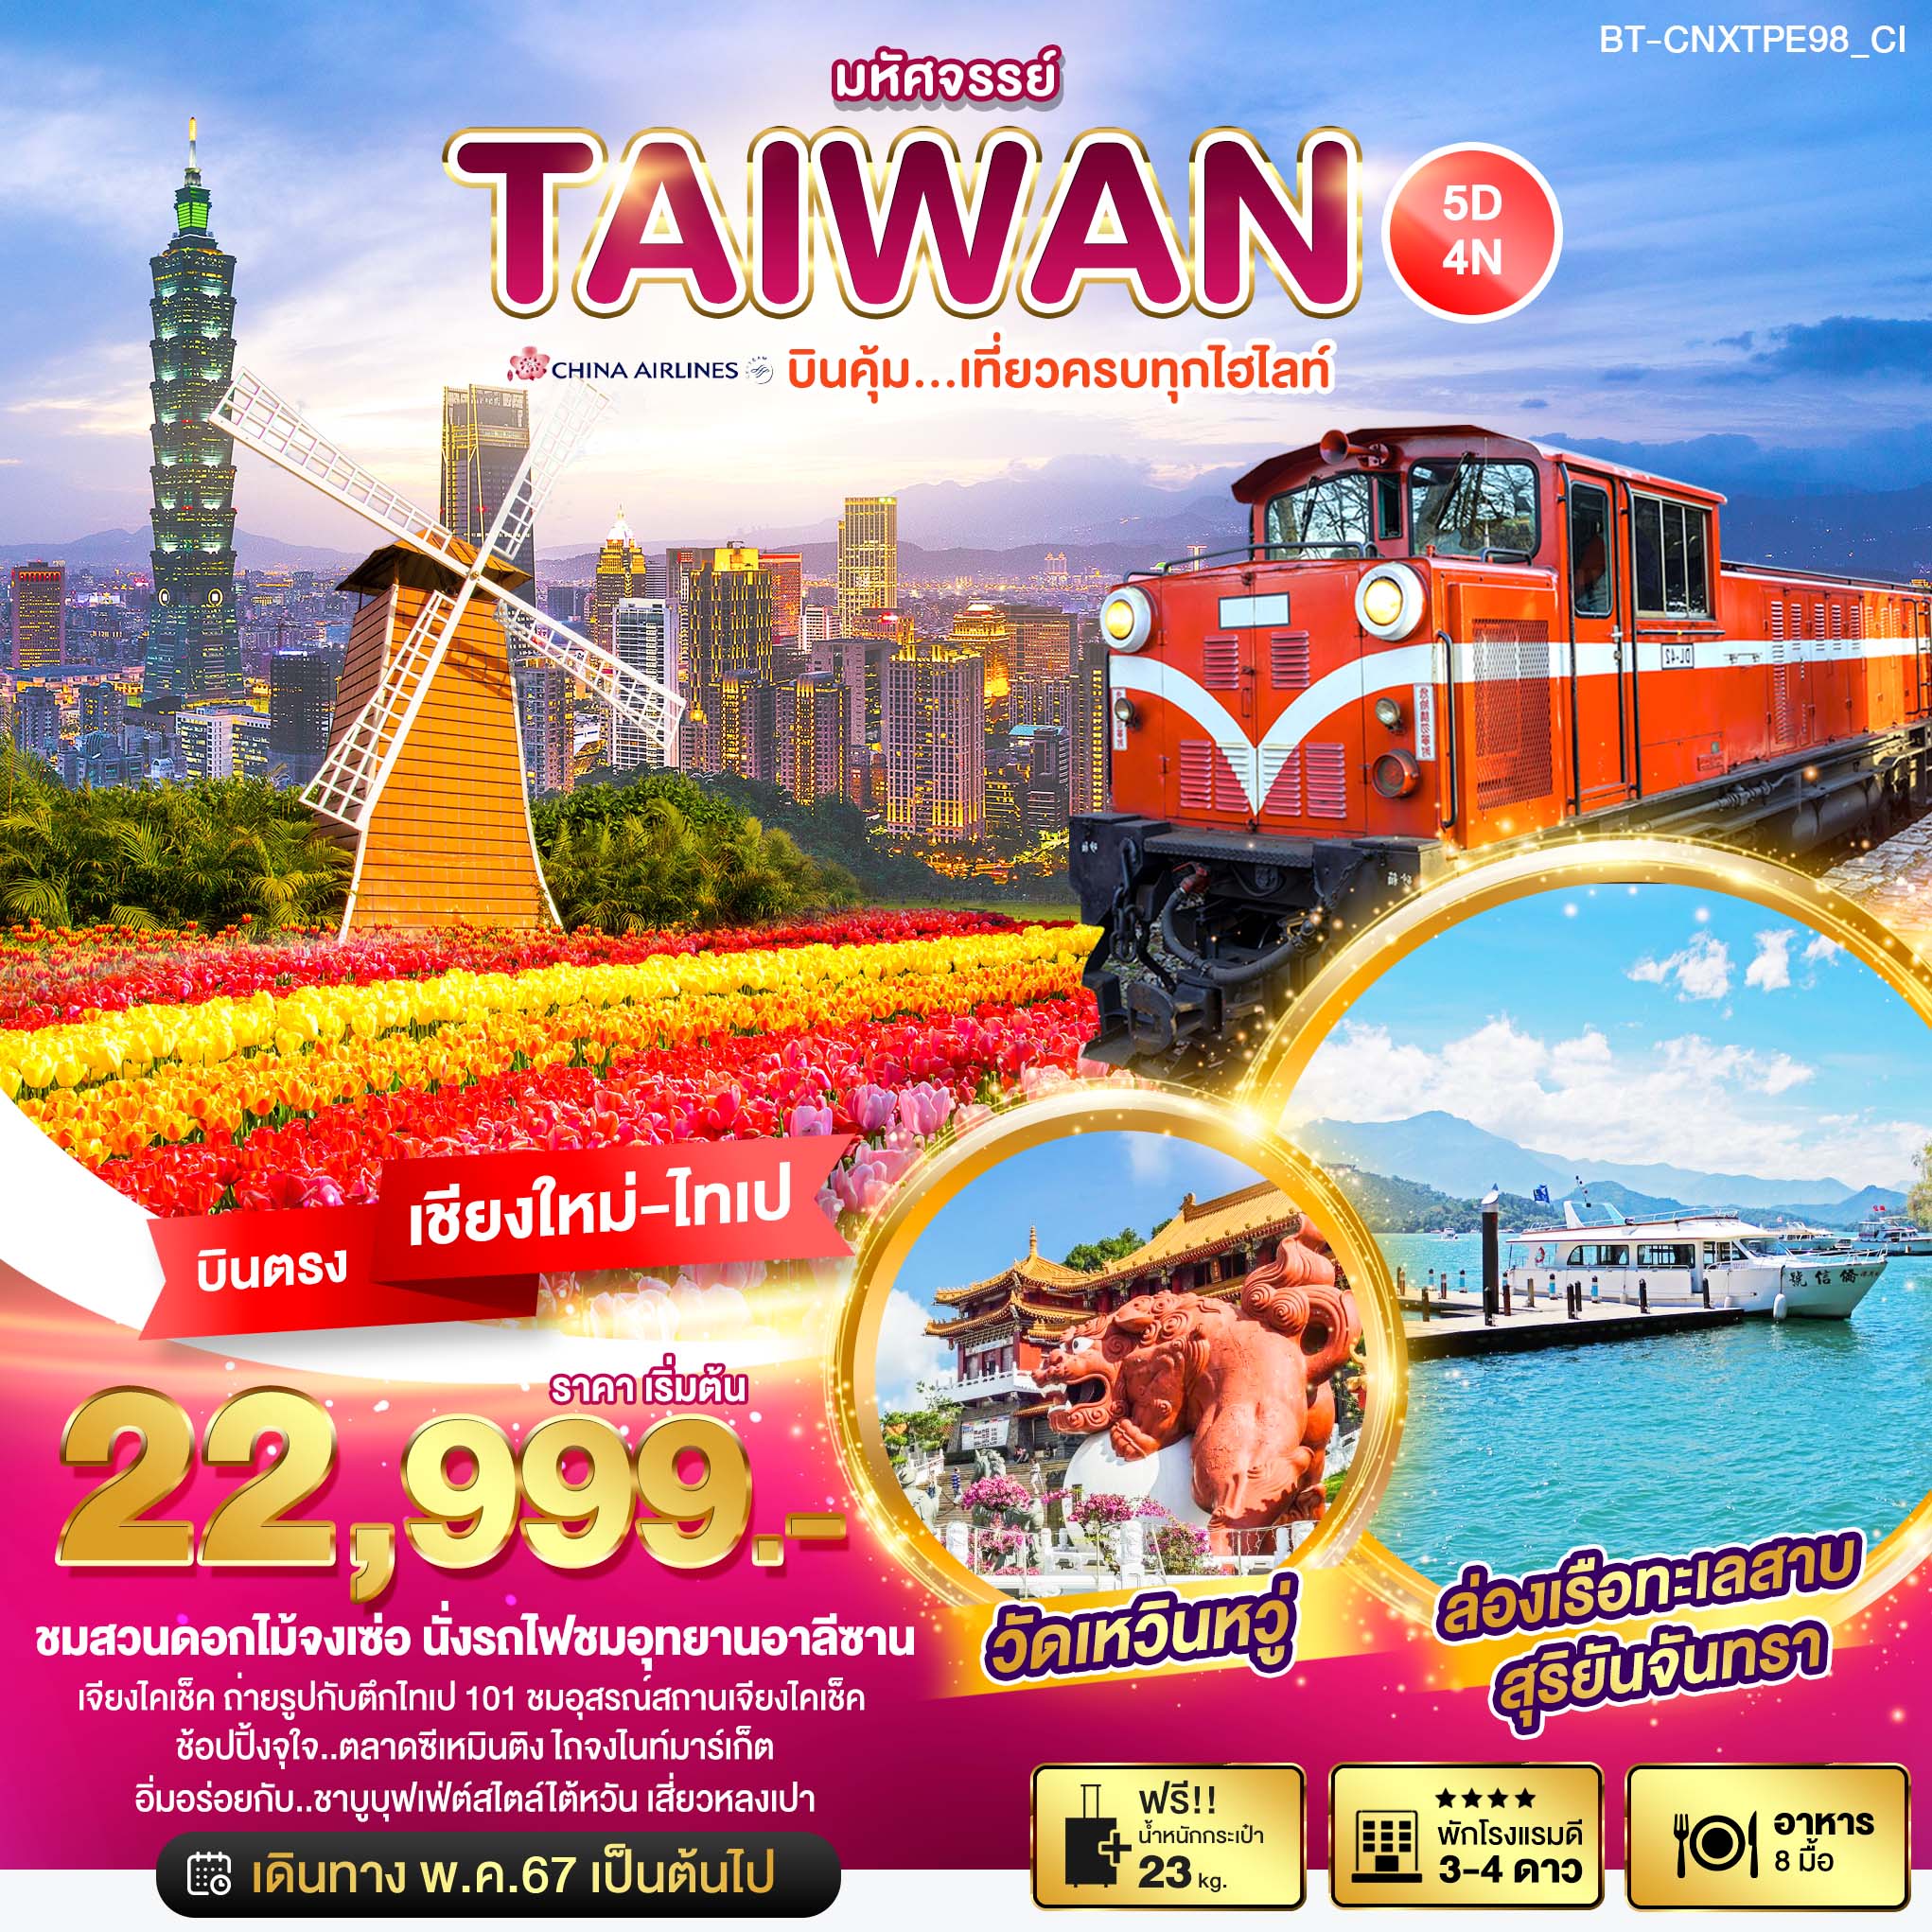 ทัวร์ไต้หวัน มหัศจรรย์..TAIWAN บินคุ้ม เที่ยวครบทุกไฮไลท์ 5 วัน 4 คืน